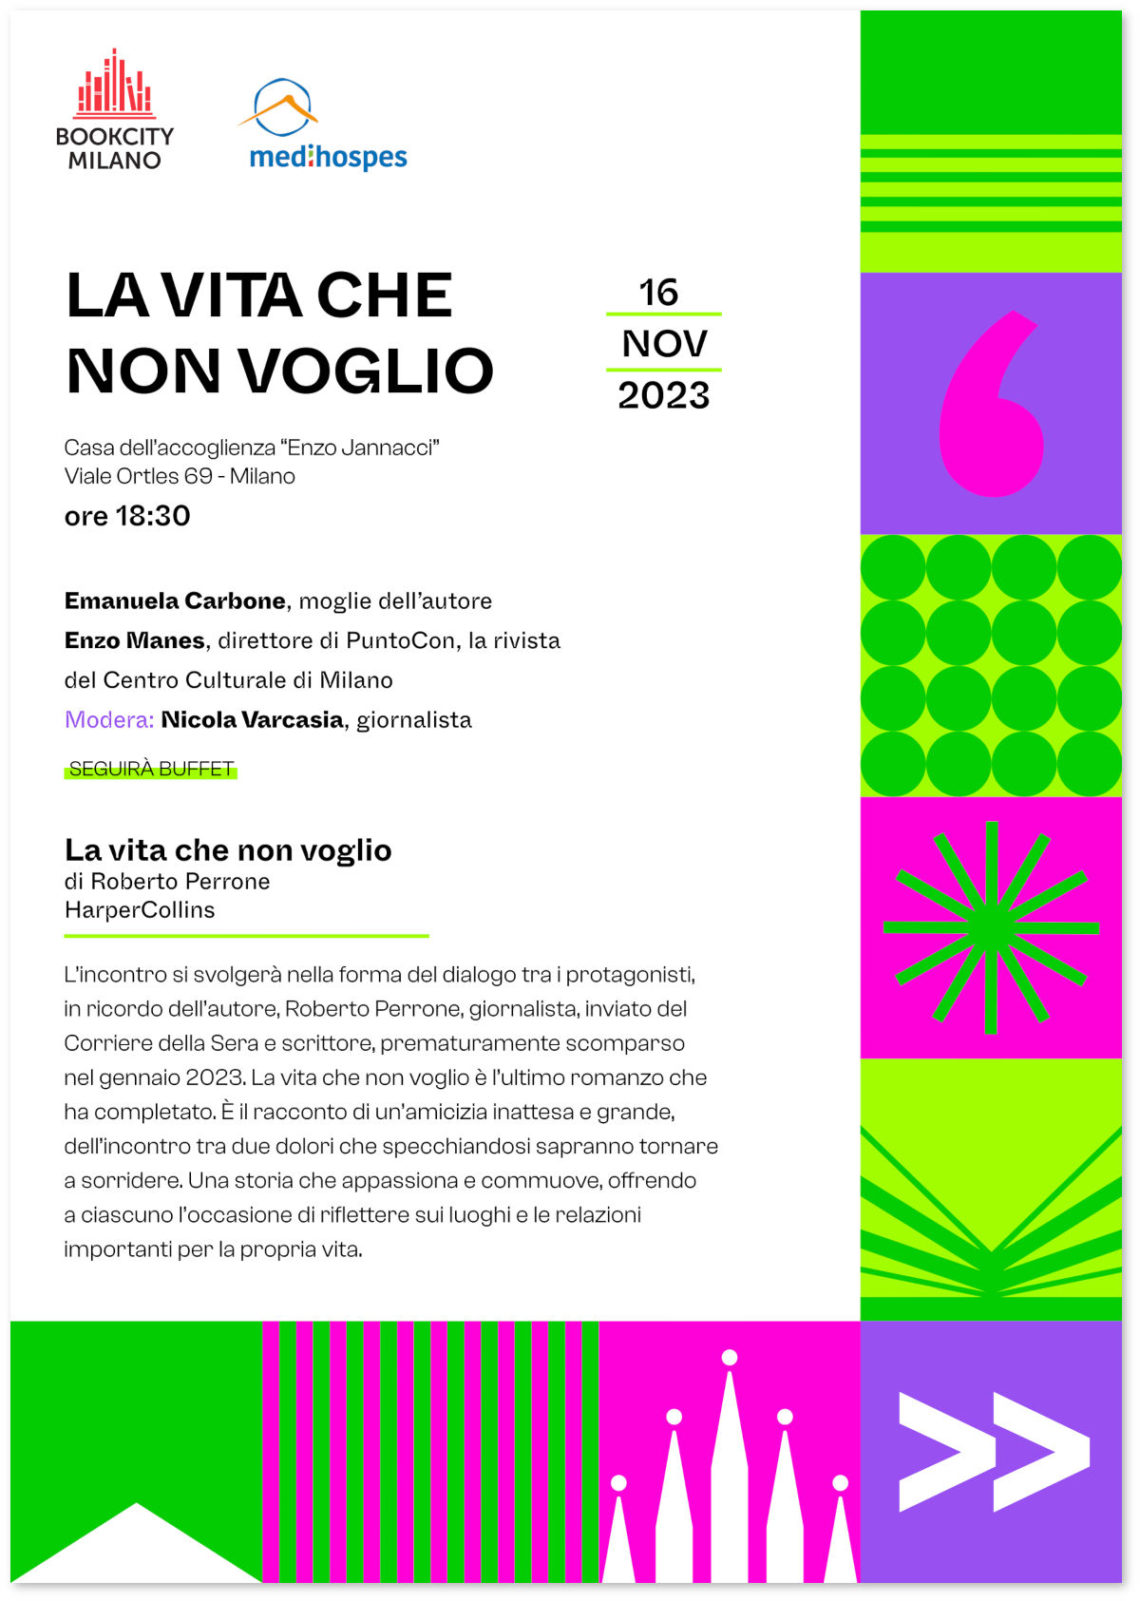 Invito alla presentazione di “La vita che non voglio”, romanzo di Roberto Perrone, nell’ambito di Milano BookCity